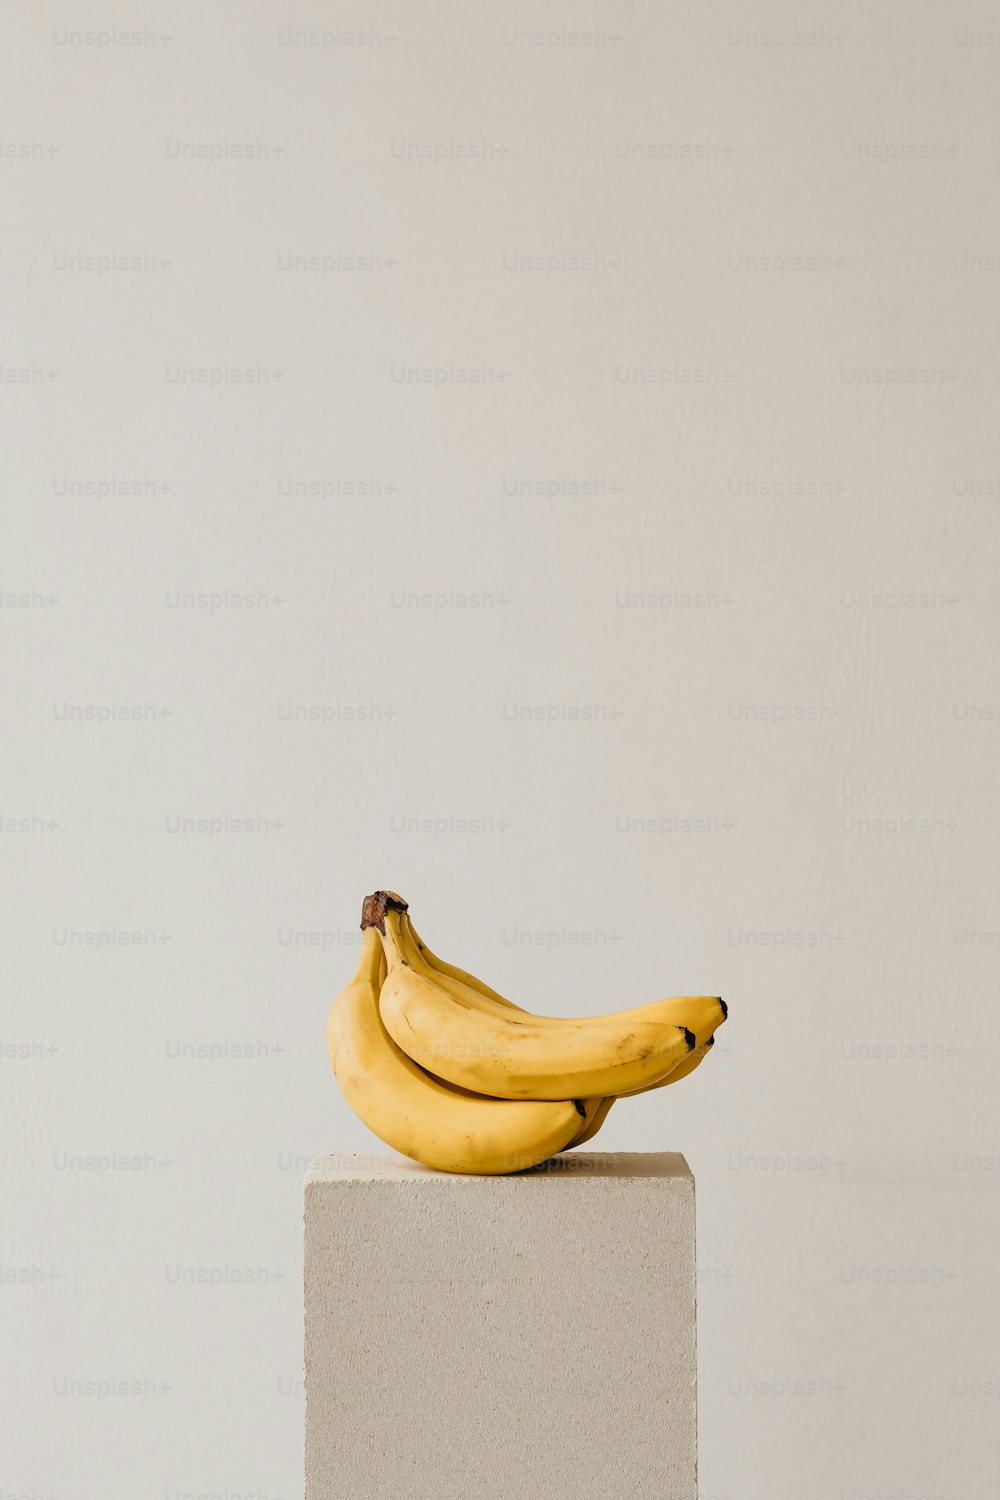 하얀 블록 위에 바나나 한 다발이 놓여 있다